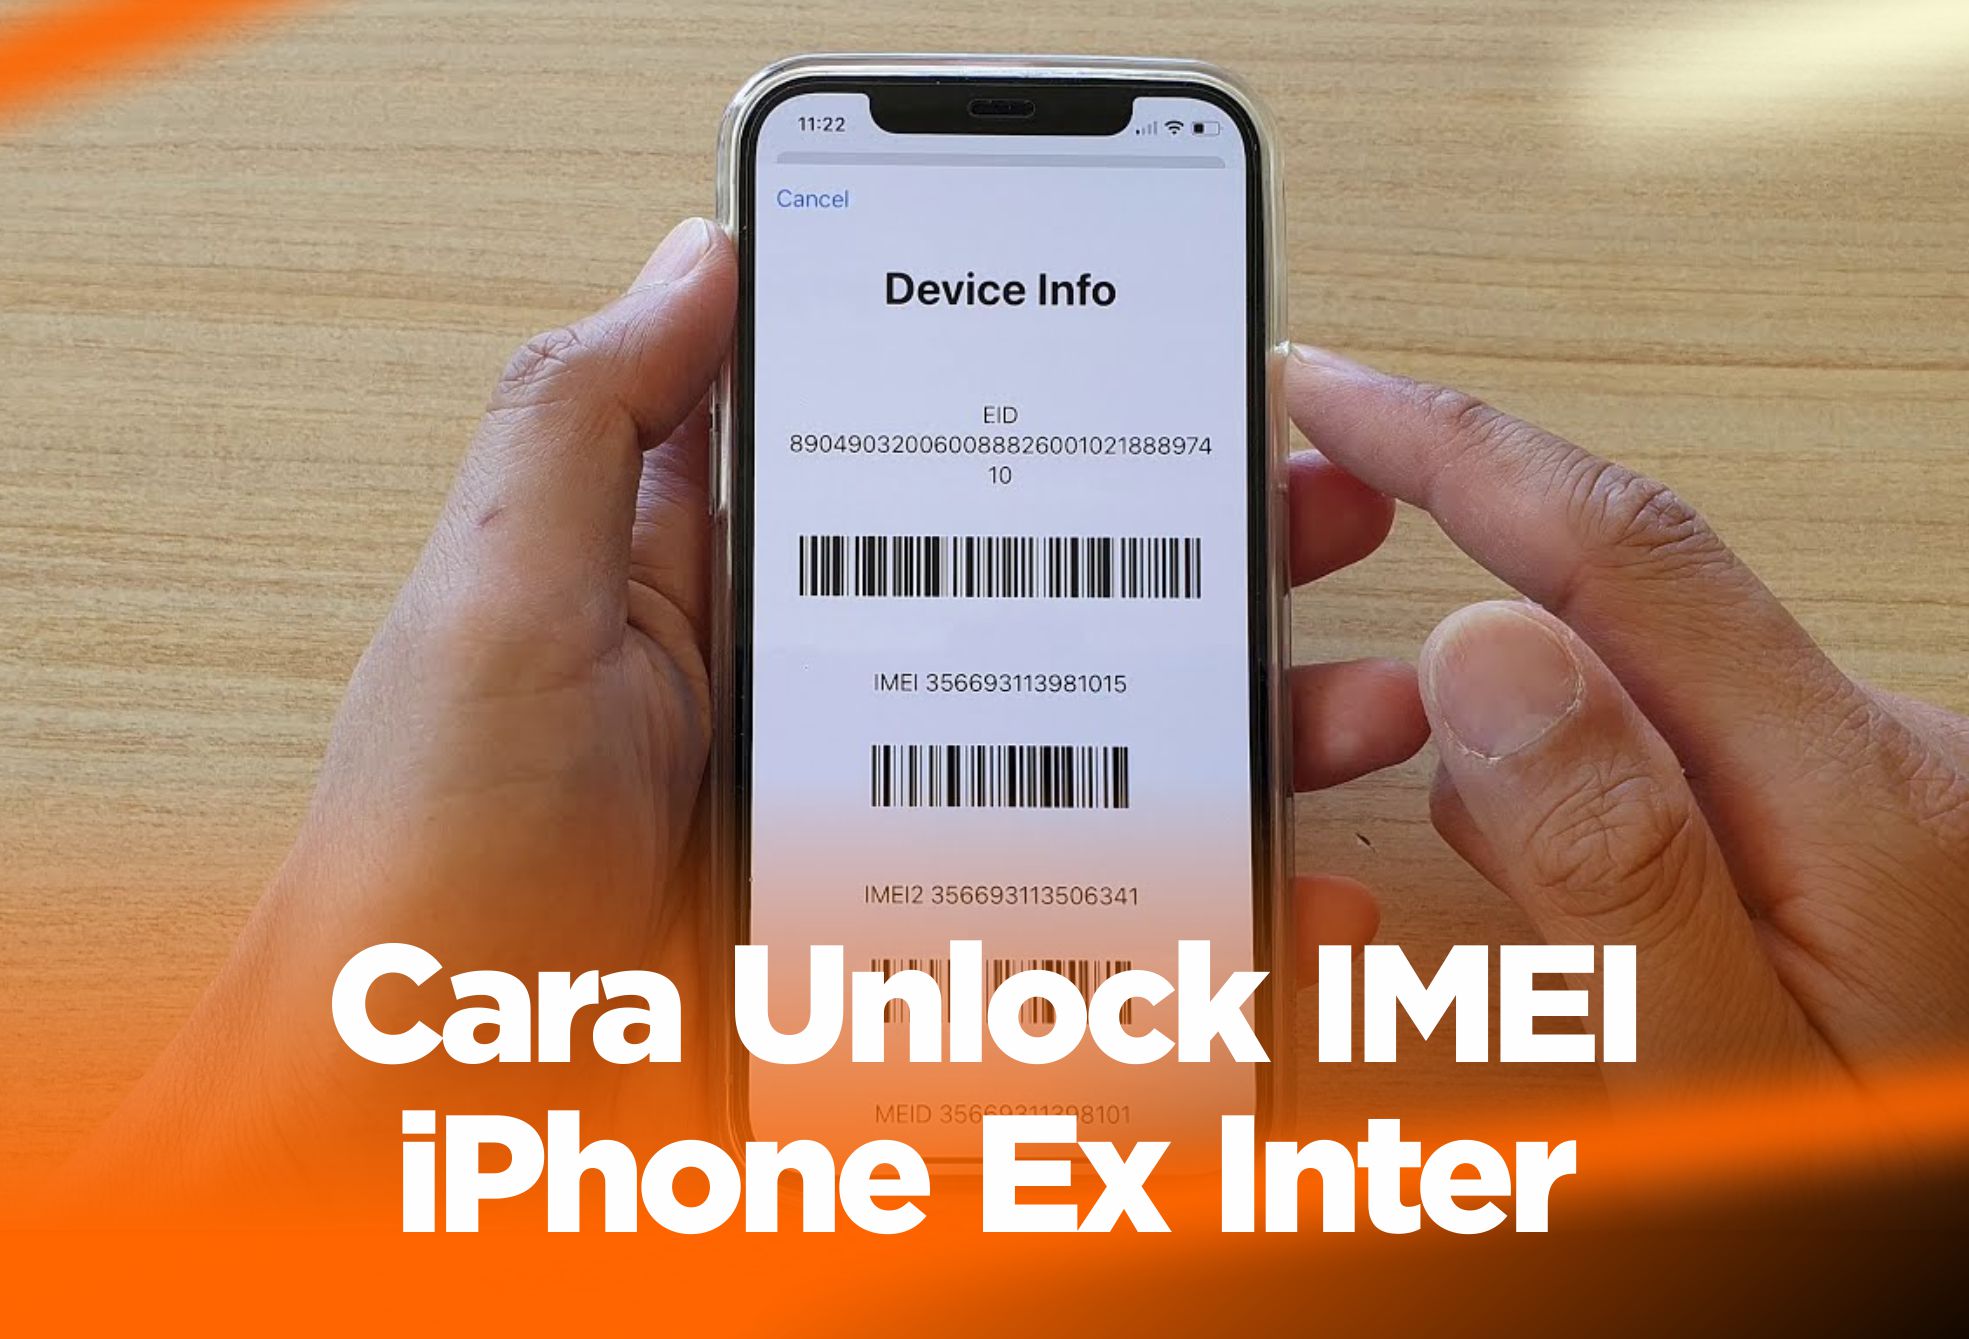 Cara Unlock IMEI iPhone Ex Inter